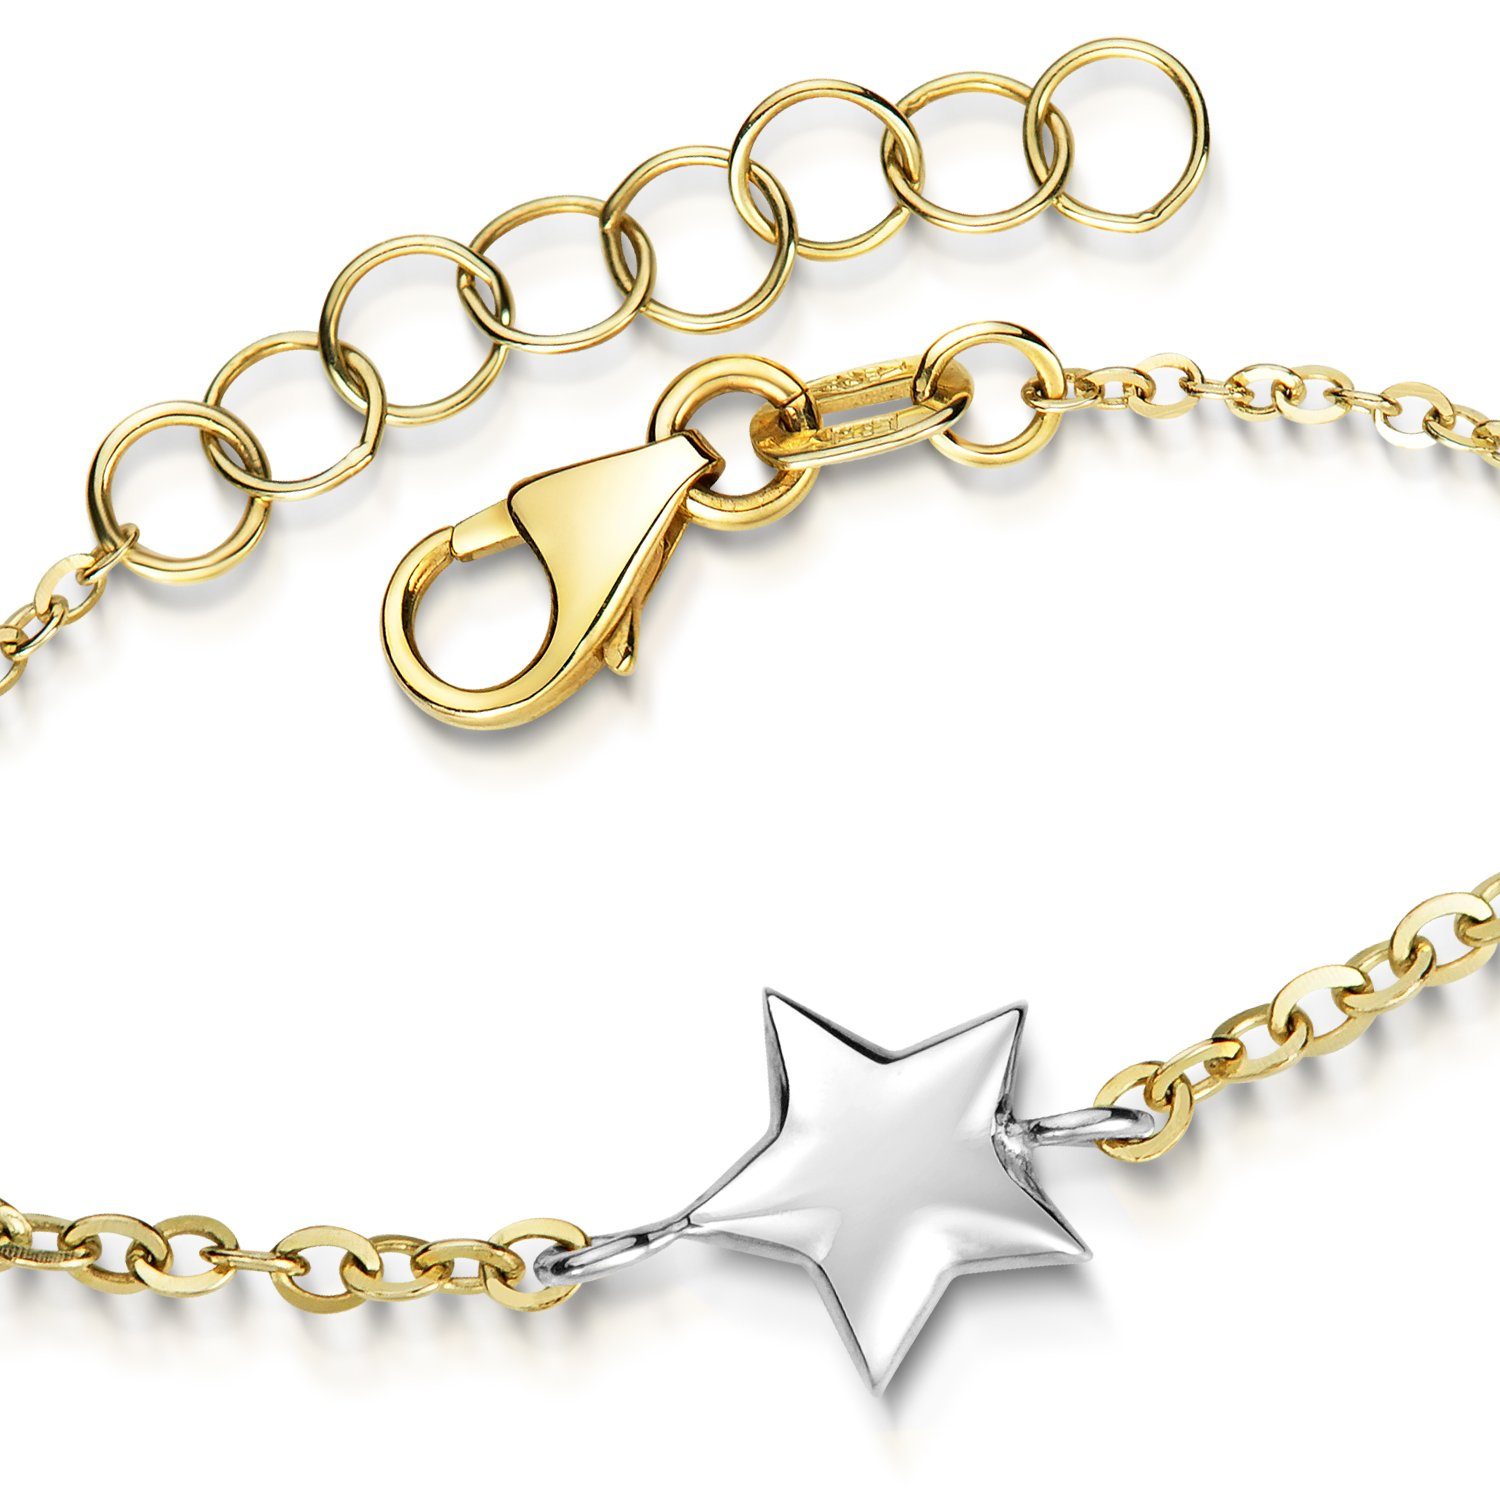 Gelbgold, GA-16, 16-18cm Armkette / Kinderarmband Echtgold 375 Sternchen 375 Materia Weißgold Sterne